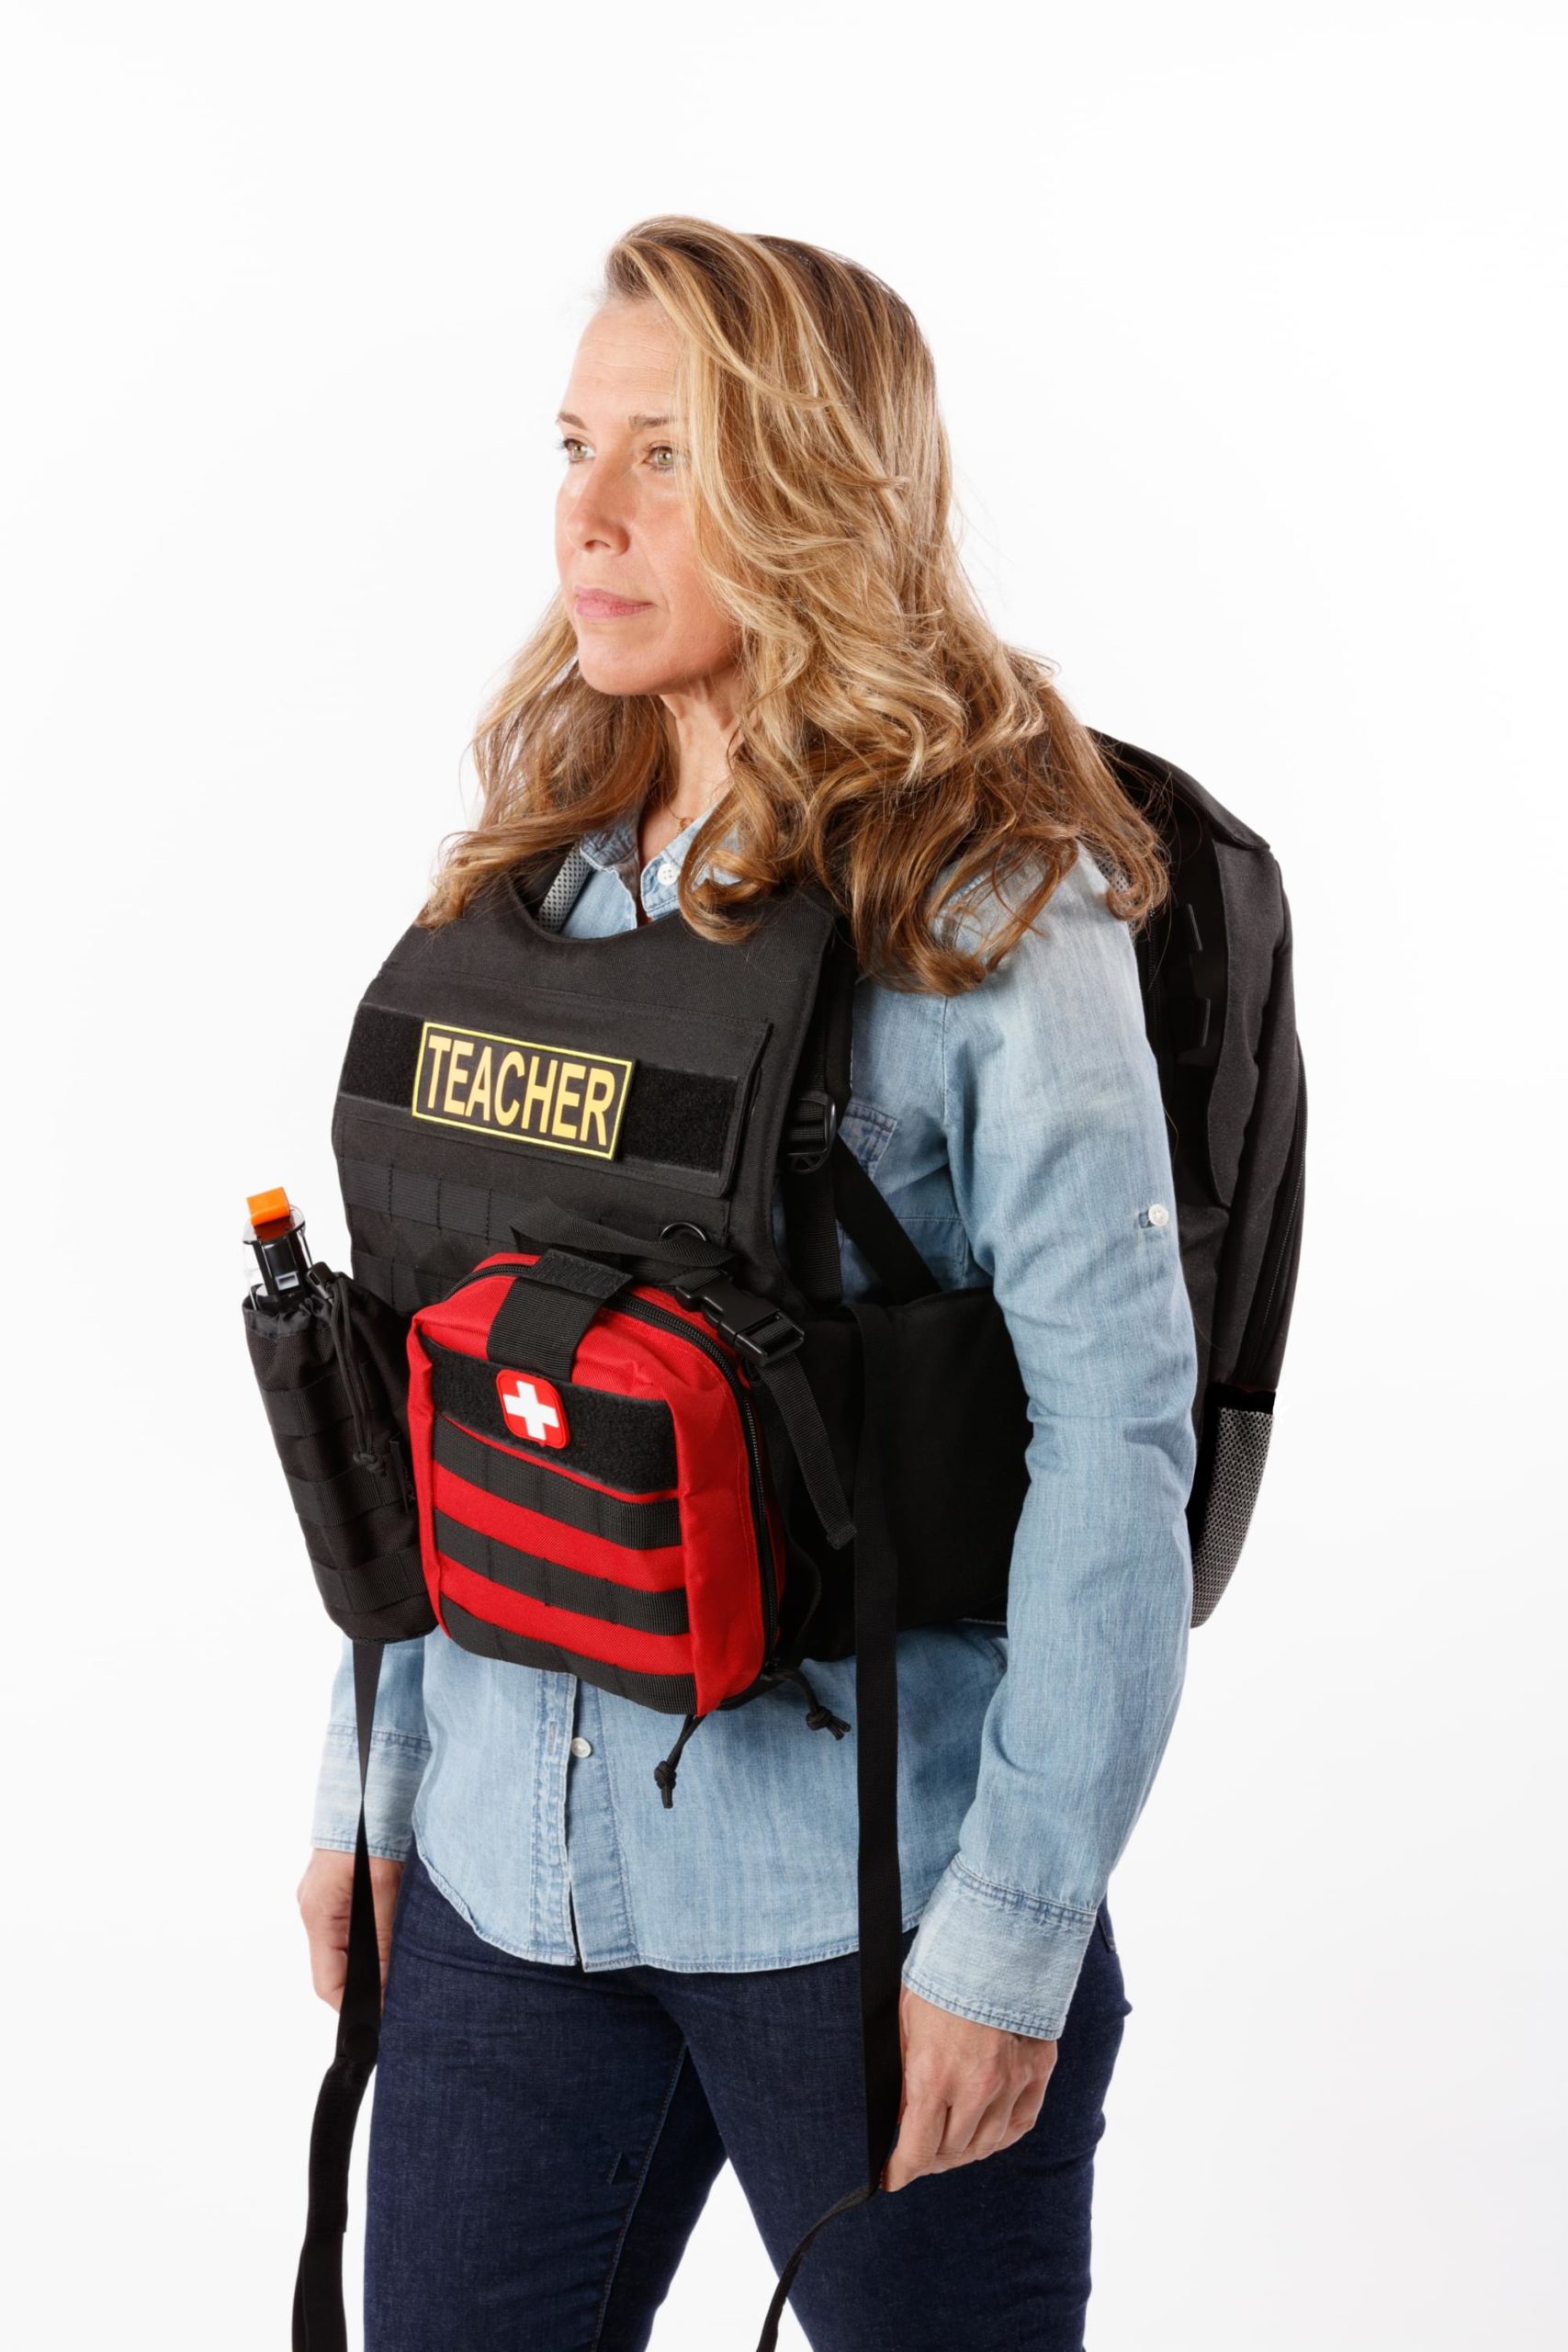 Bodyguard bulletproof backpack for teacher